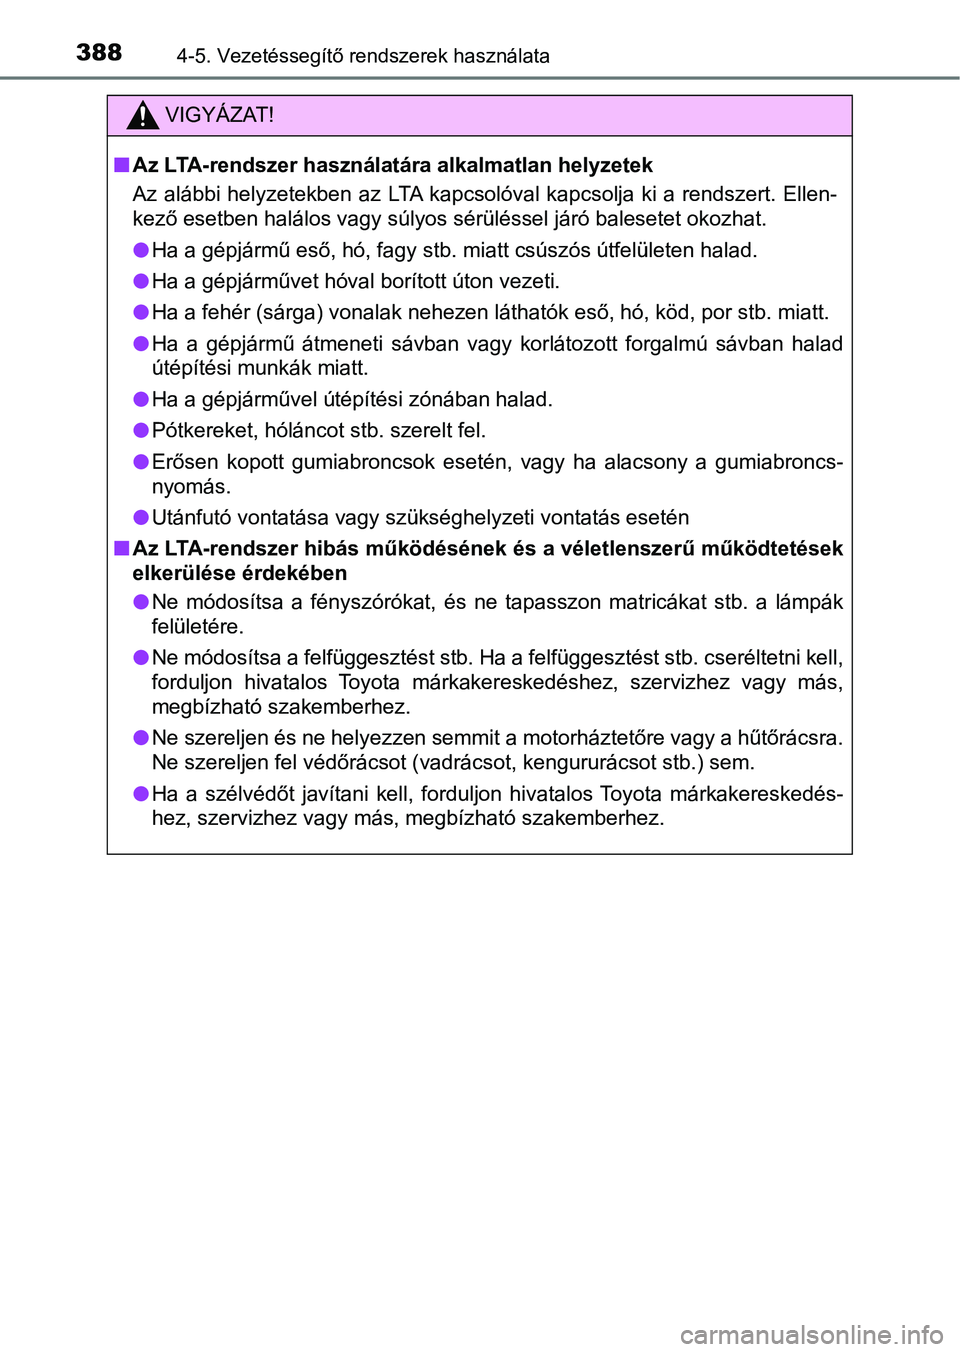 TOYOTA C-HR 2022  Kezelési útmutató (in Hungarian) 3884-5. Vezetéssegítő rendszerek használata
VIGYÁZAT!
nAz LTA-rendszer használatára alkalmatlan helyzetek
Az alábbi  helyzetekben az LTA  kapcsolóval kapcsolja ki a  rendsz ert. Ellen-
kező 